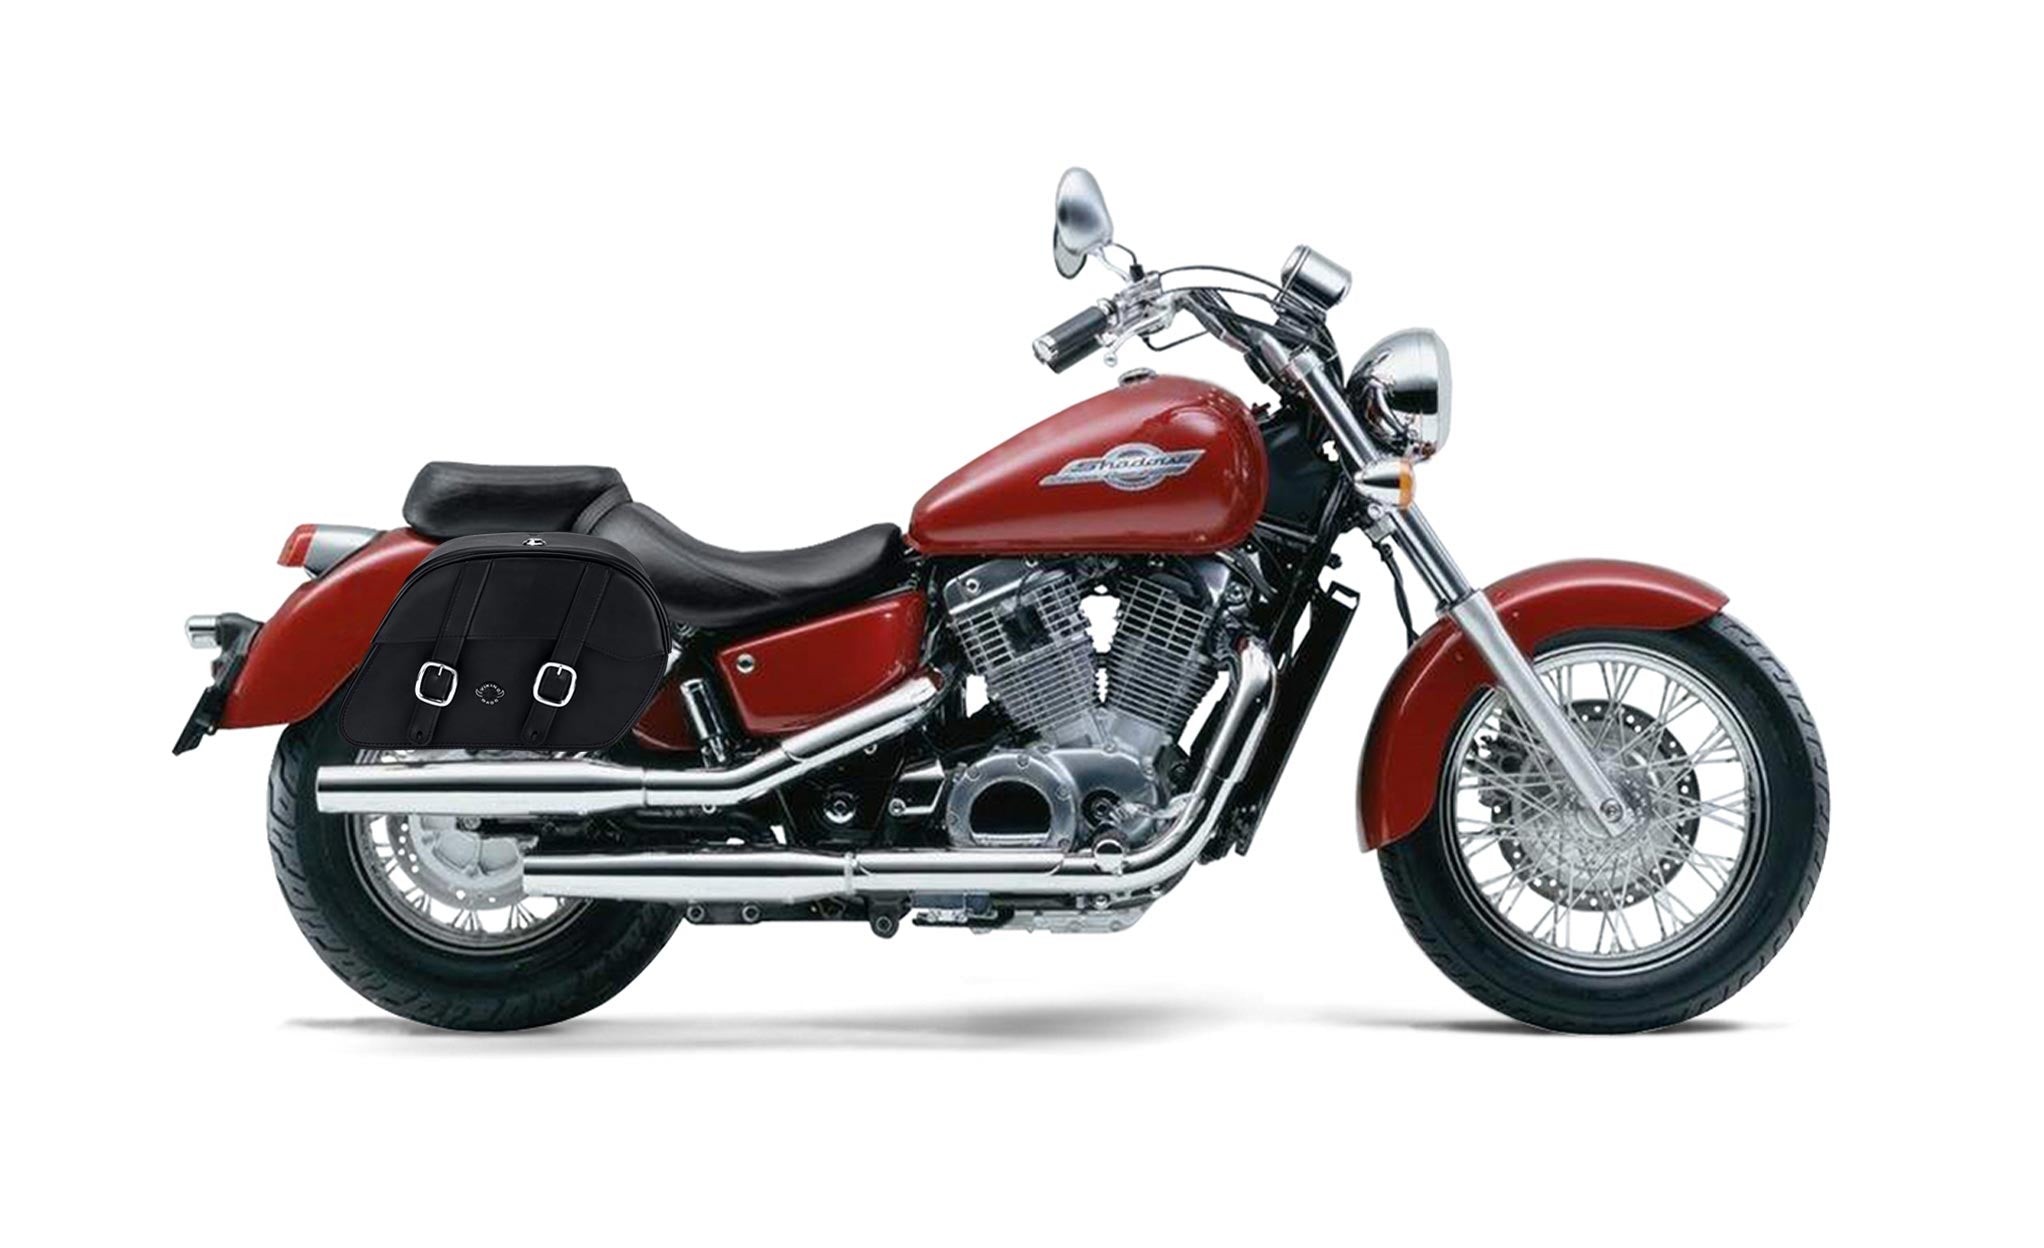 Viking Skarner Medium Lockable Honda Shadow 1100 Ace Leather Motorcycle Saddlebags on Bike Photo @expand